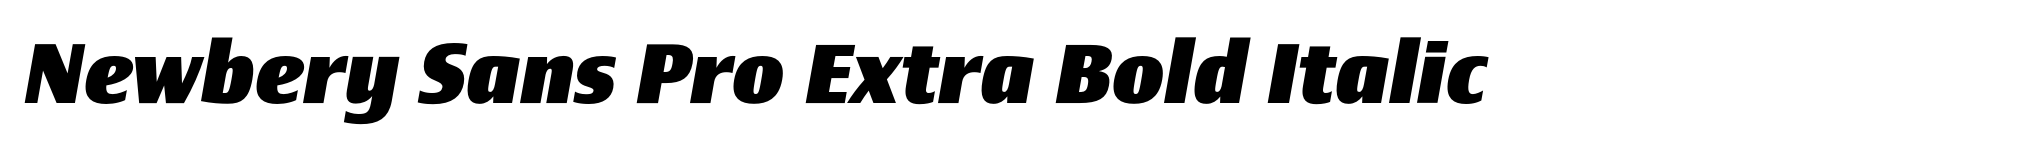 Newbery Sans Pro Extra Bold Italic image